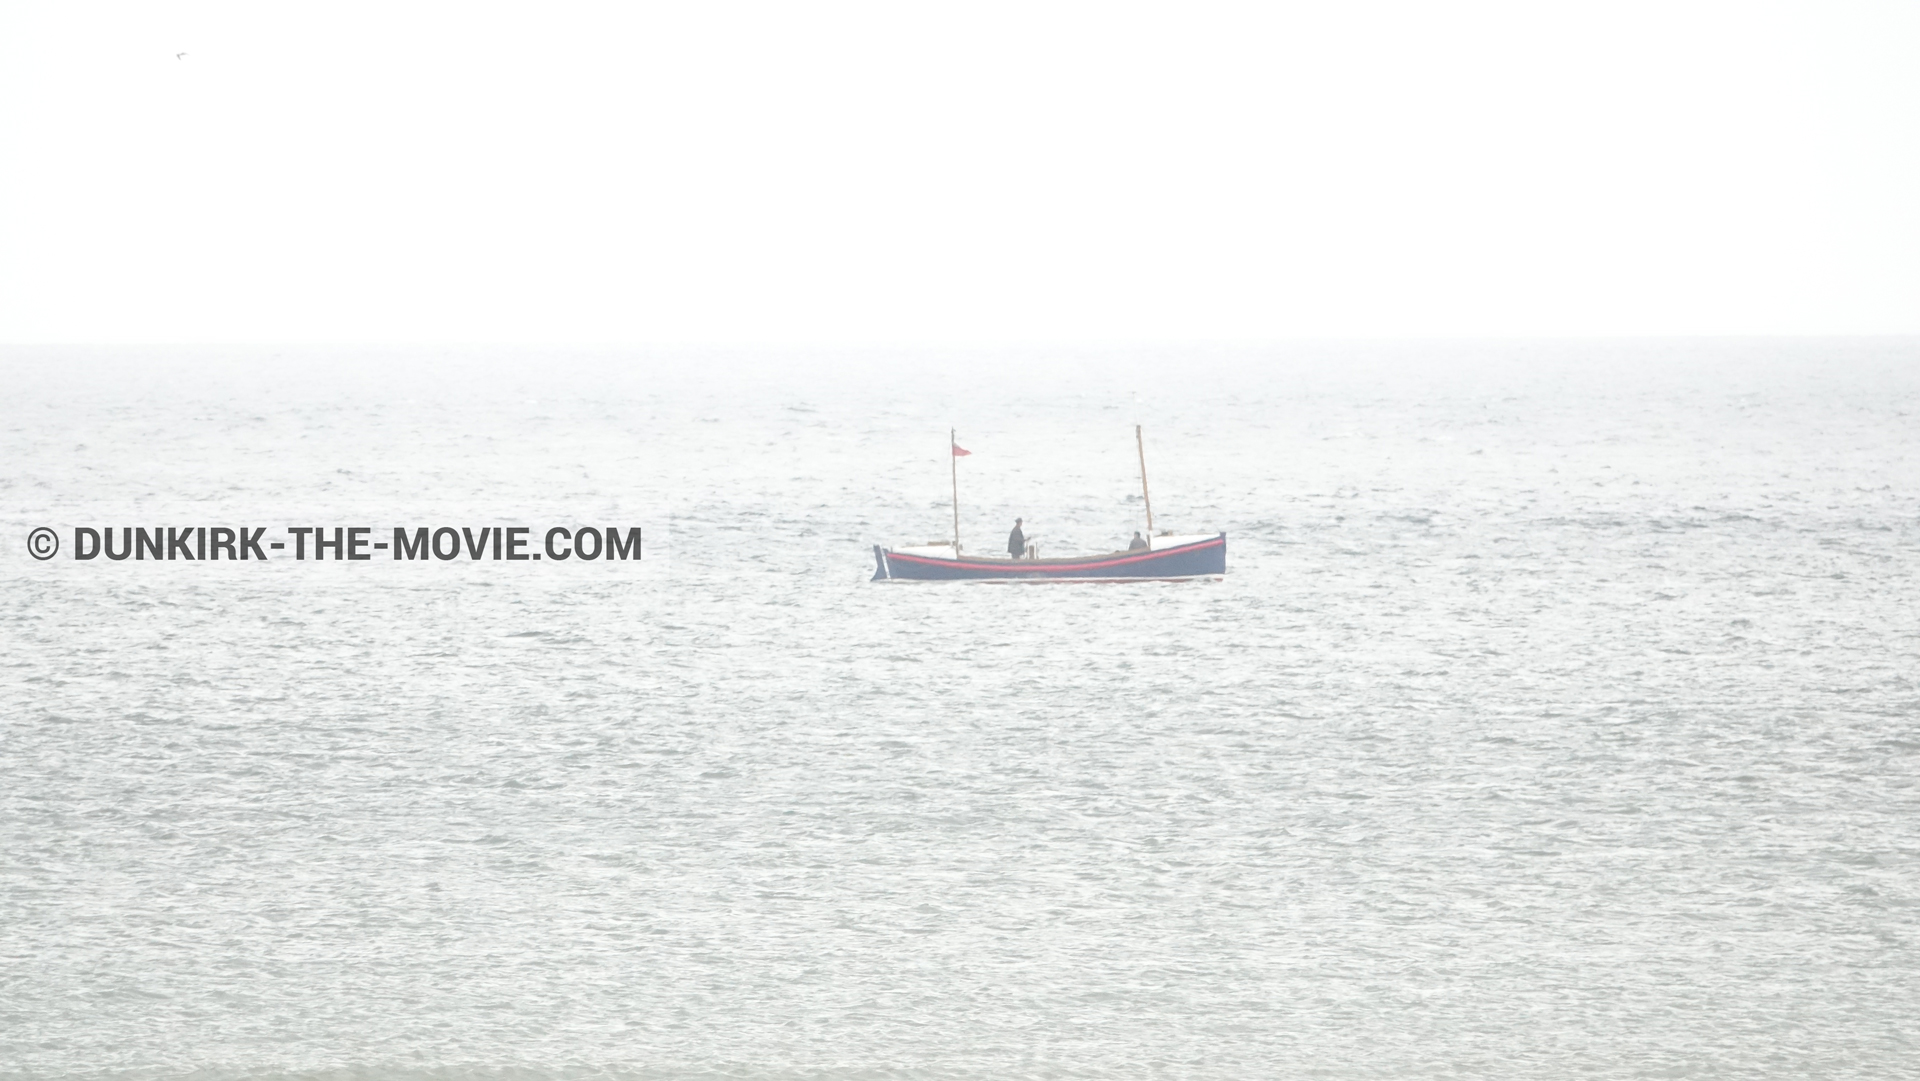 Fotos con cielo gris, mares calma, del bote salvavidas Henry Finlay ,  durante el rodaje de la película Dunkerque de Nolan